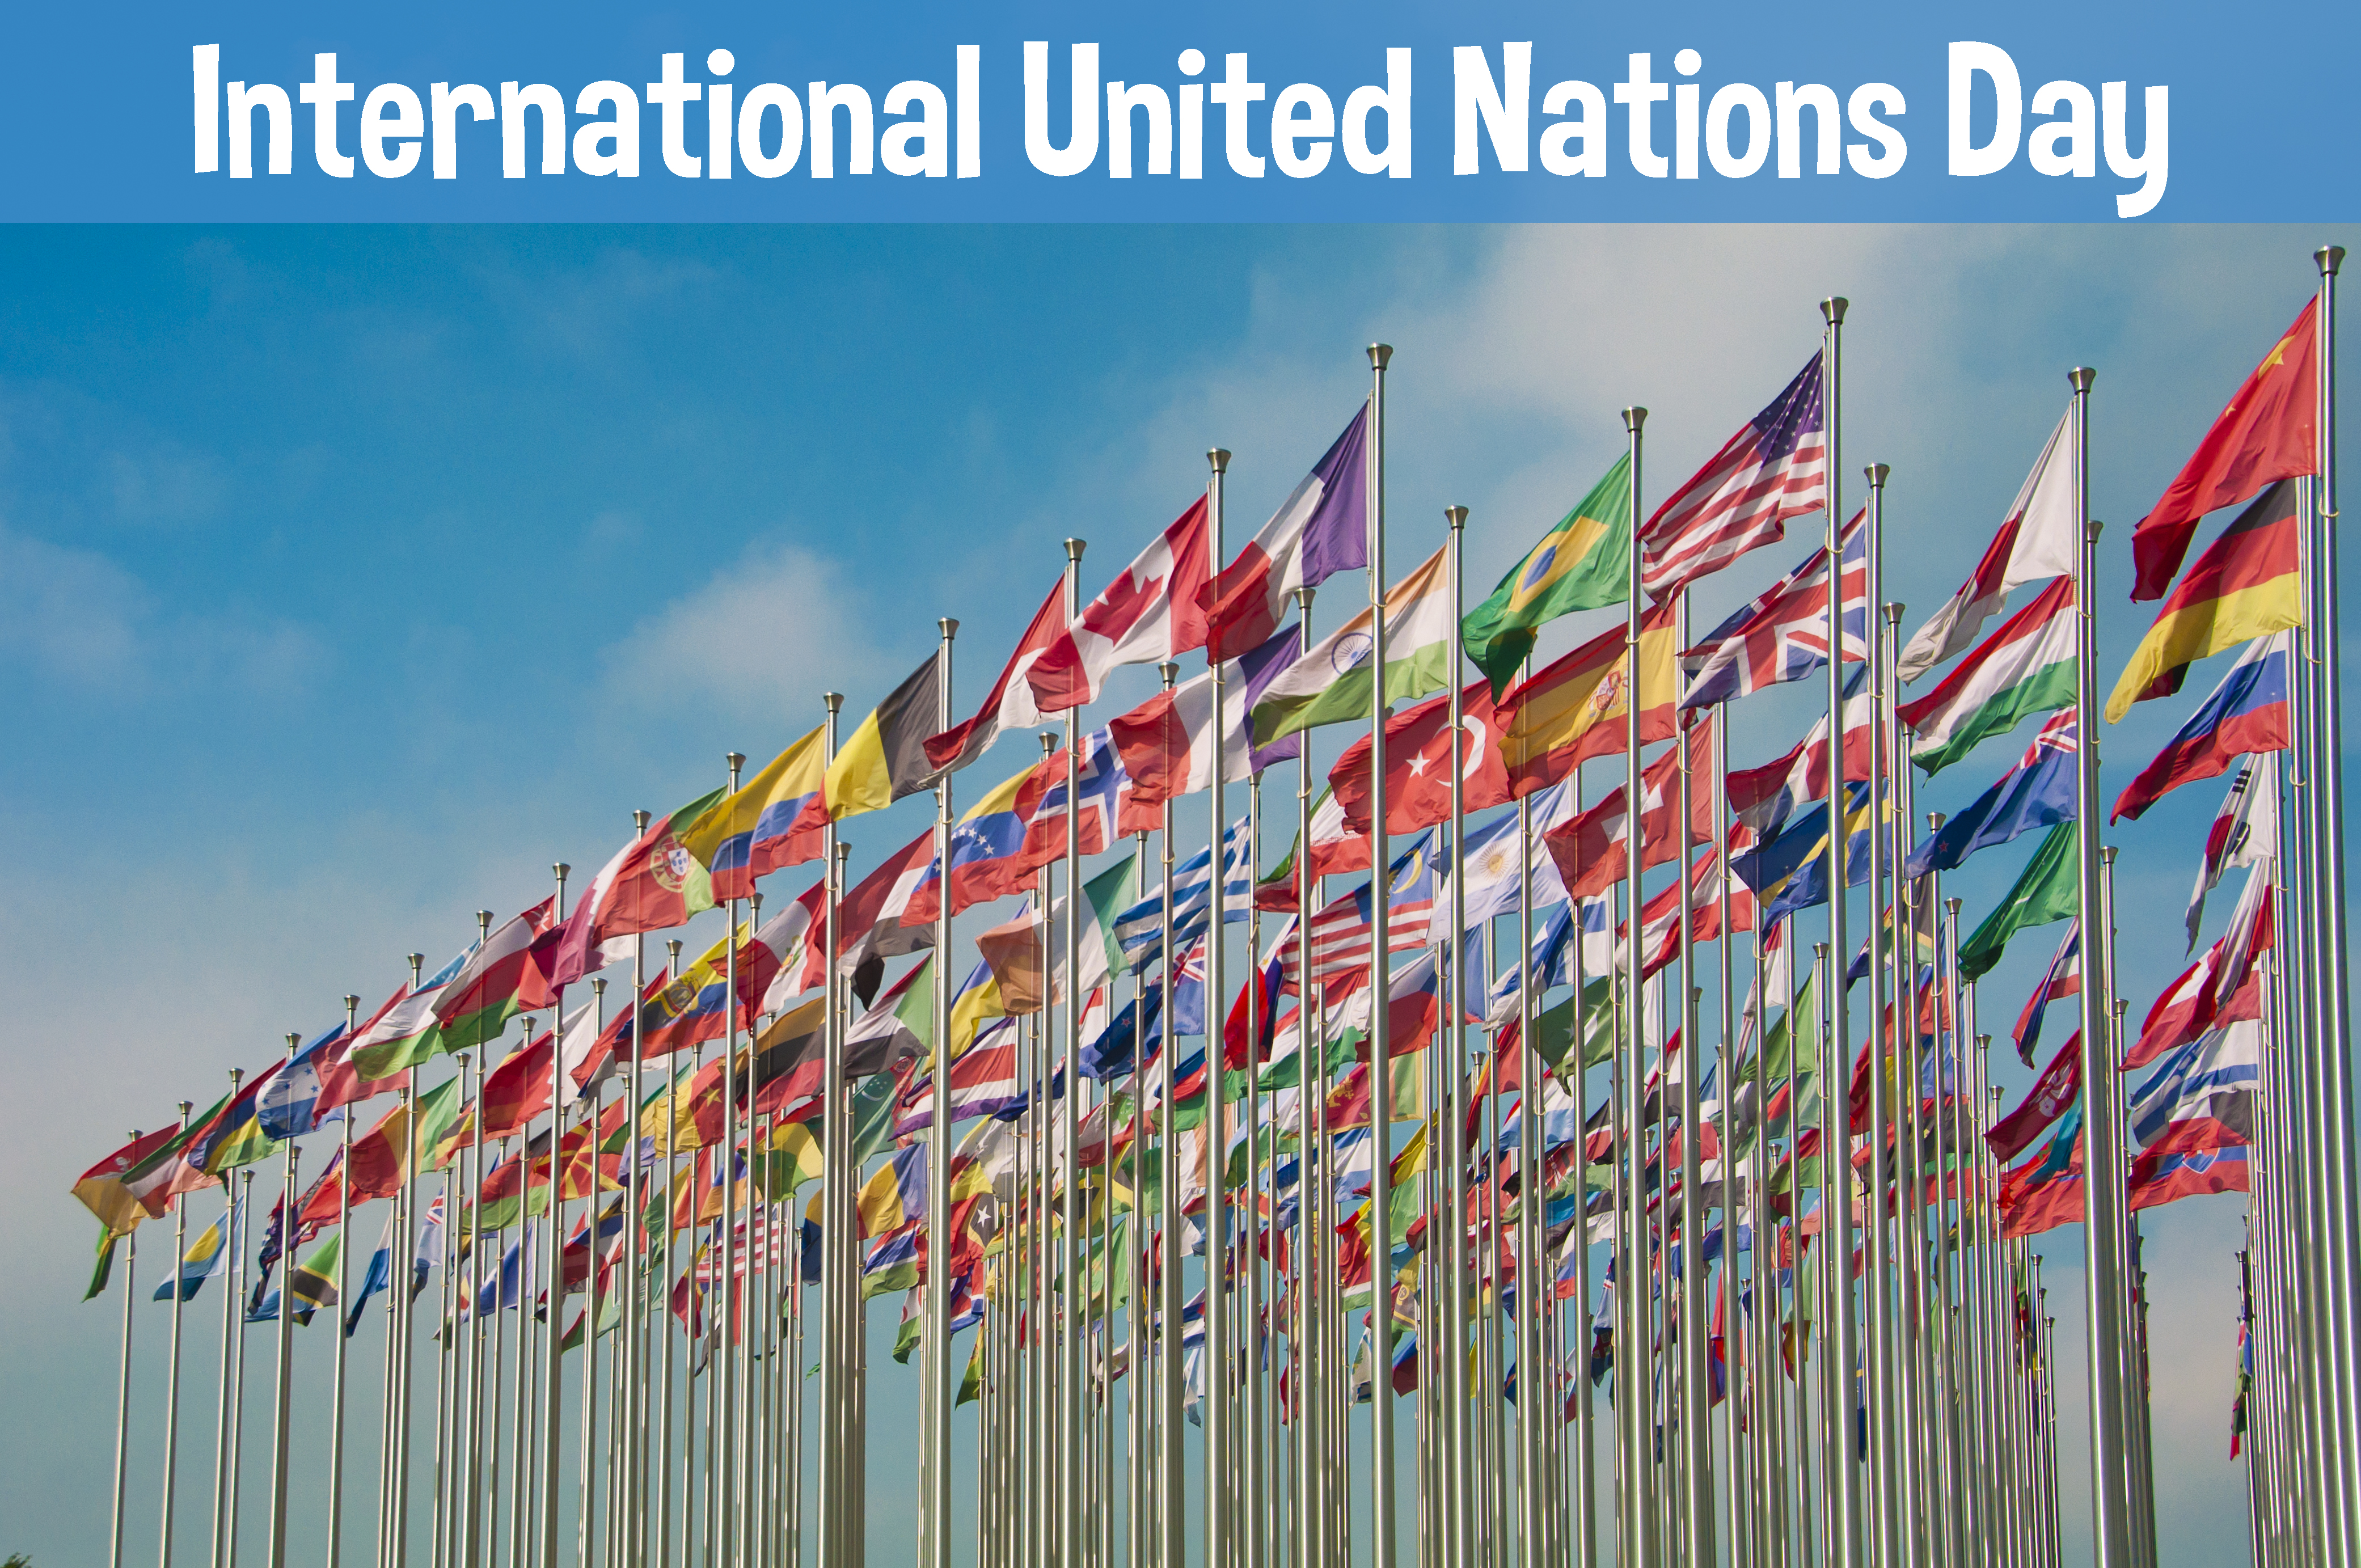 Ngày Liên hợp quốc - đoàn kết, chia sẻ và tương trợ cho một tương lai tốt đẹp hơn. Bạn tin rằng mỗi người trong chúng ta đều có trách nhiệm góp phần xây dựng một tương lai tốt đẹp hơn cho thế giới? Nhấp vào hình ảnh để khám phá tình yêu thương và sự đoàn kết của cộng đồng toàn cầu.